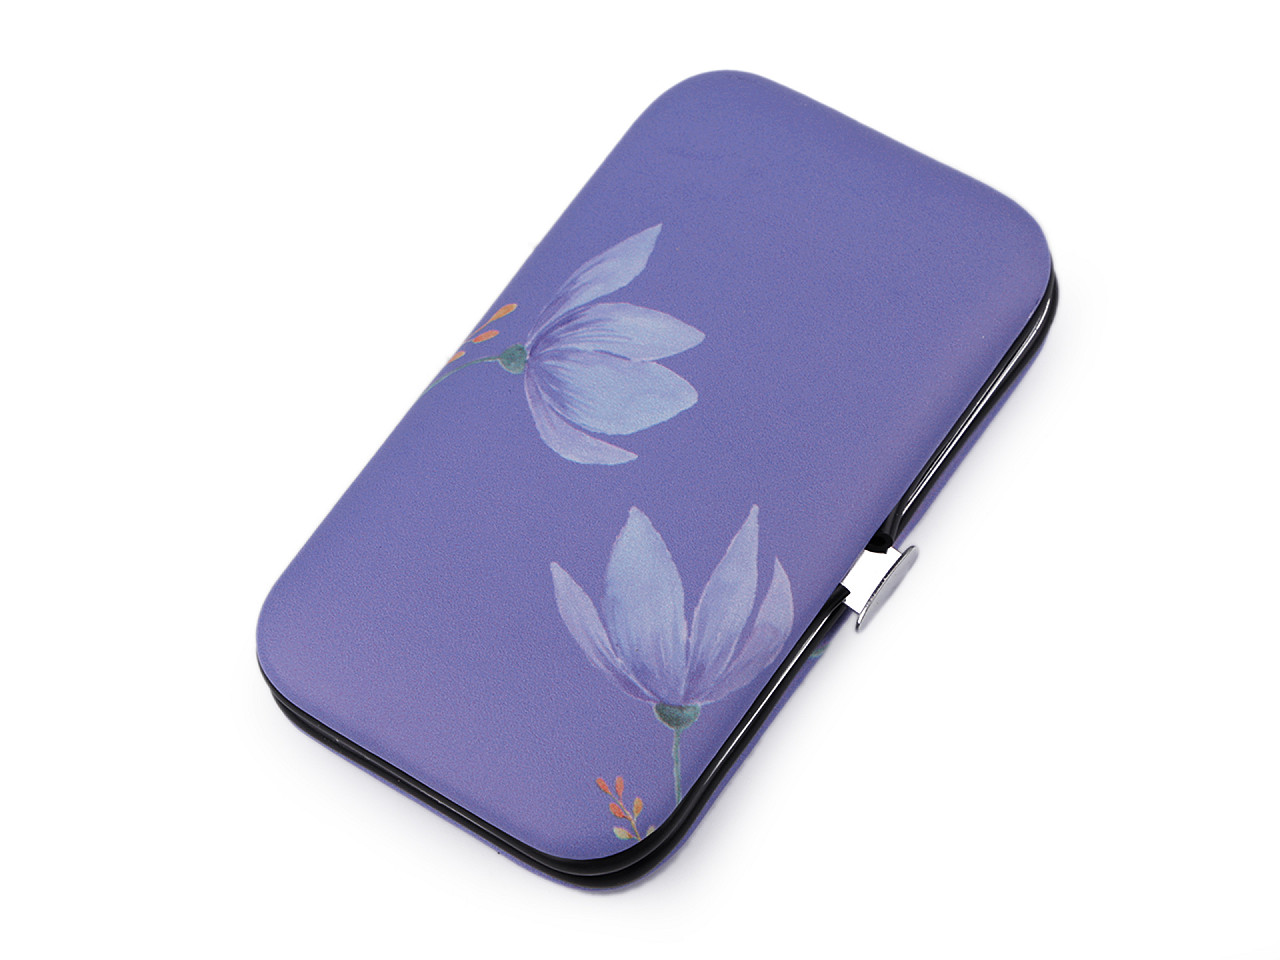 Maniküre-Set mit Blüten, violett, 1 Stk.